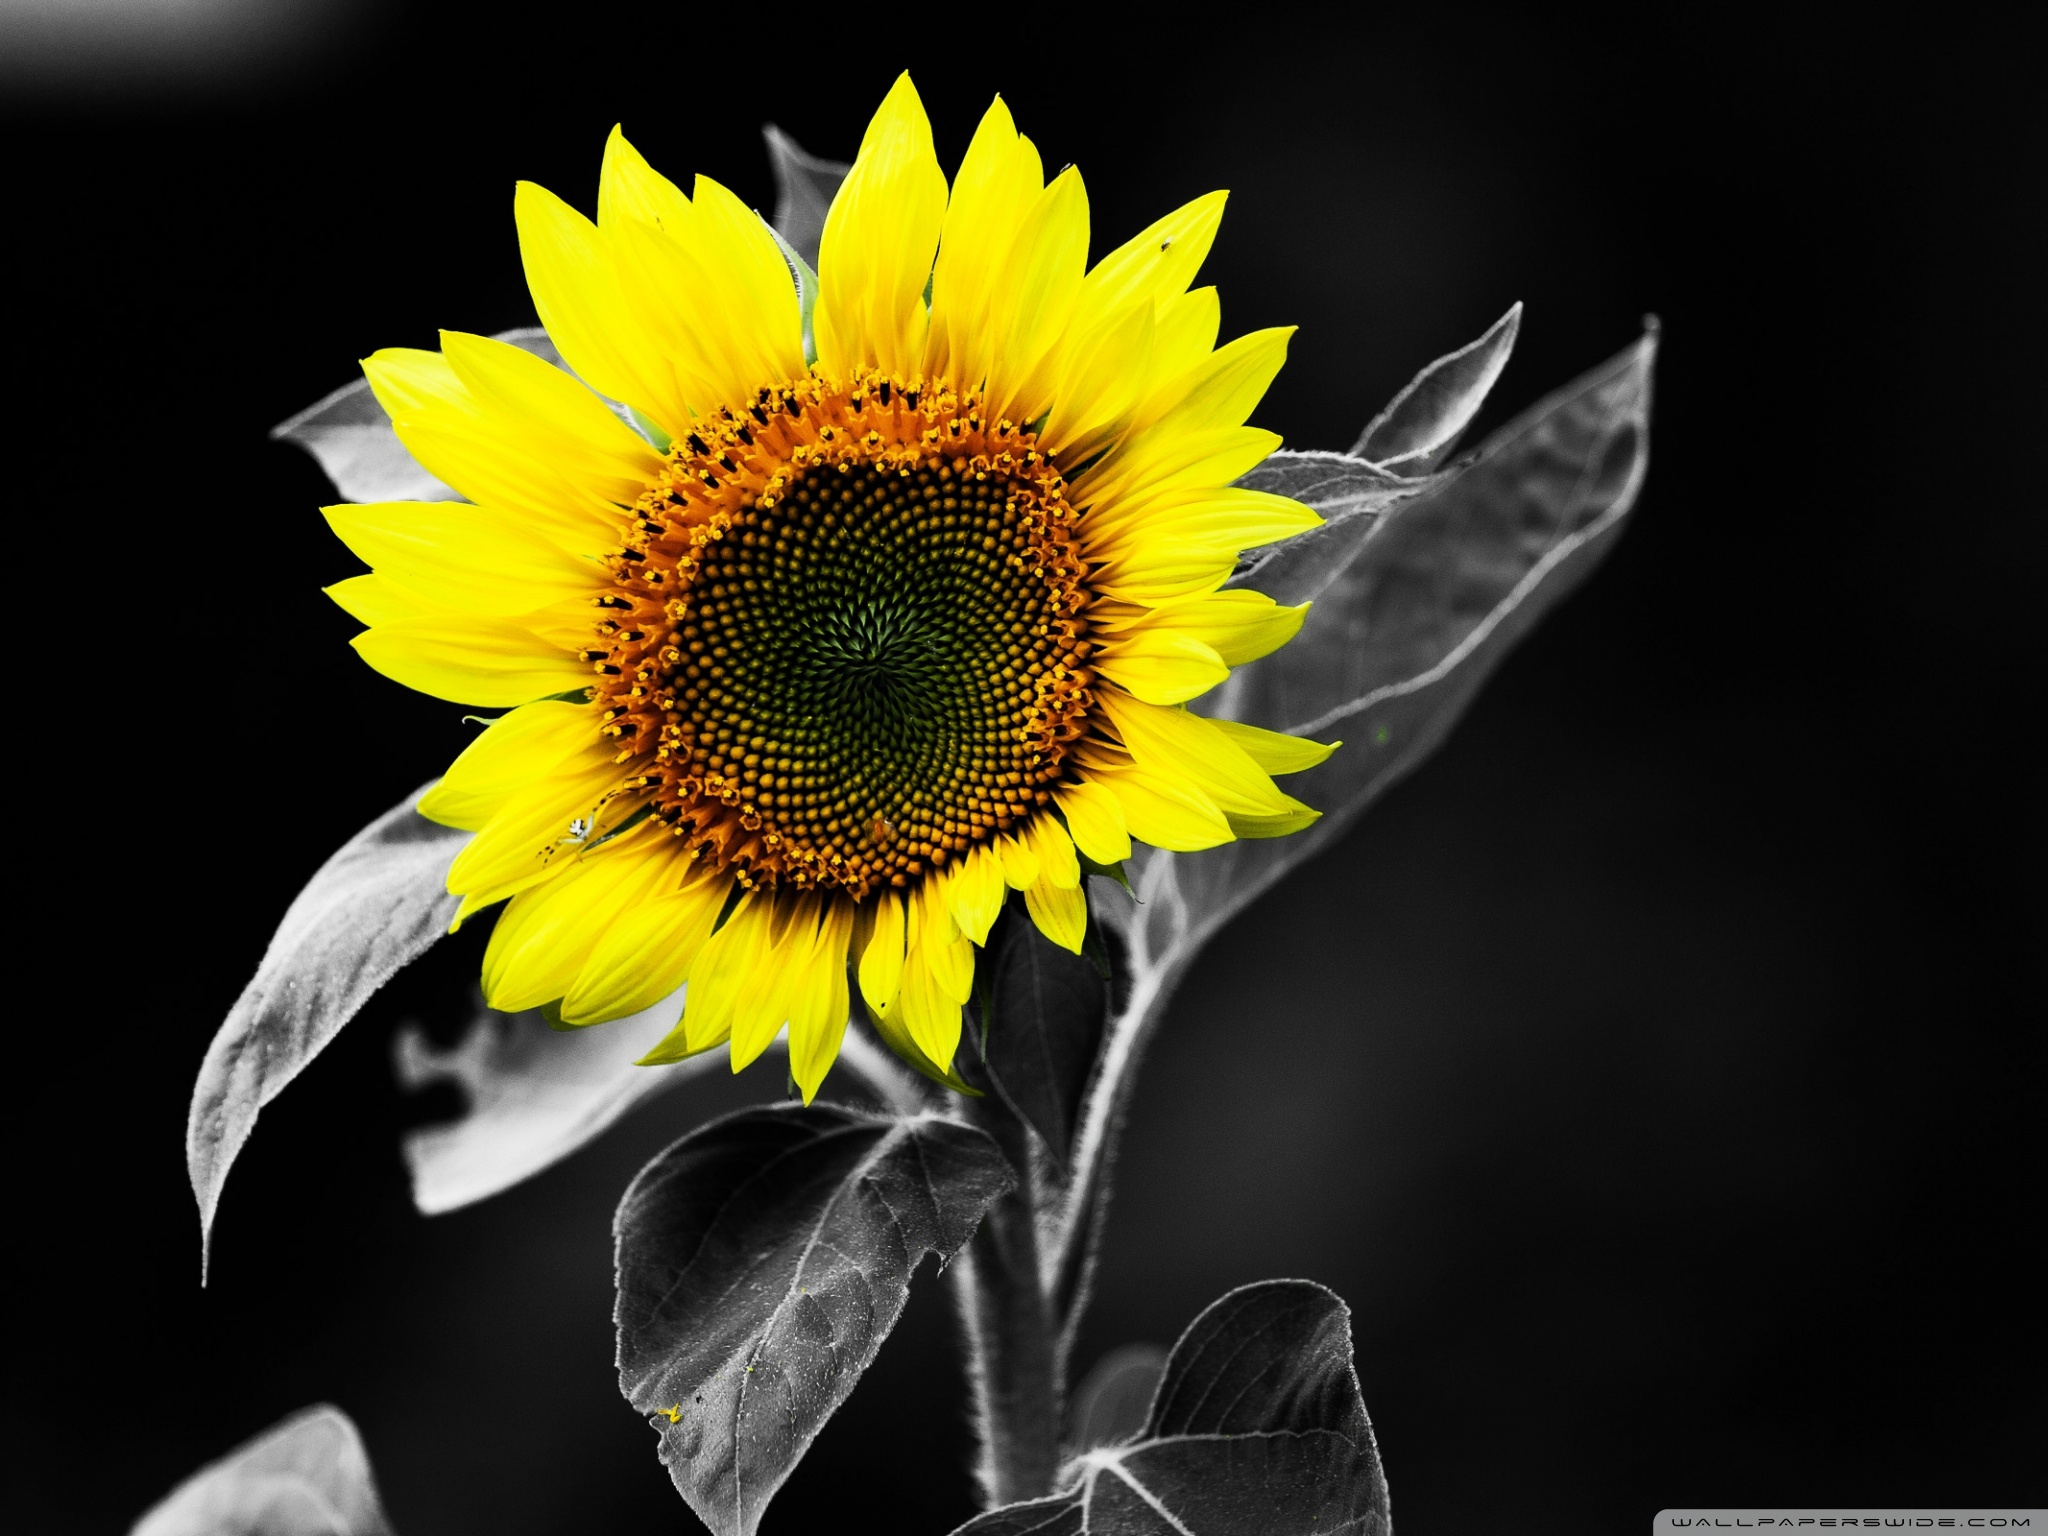 Sunflower Black And White Ultra HD Desktop Background Wallpaper for 4K UHD TV, Tablet